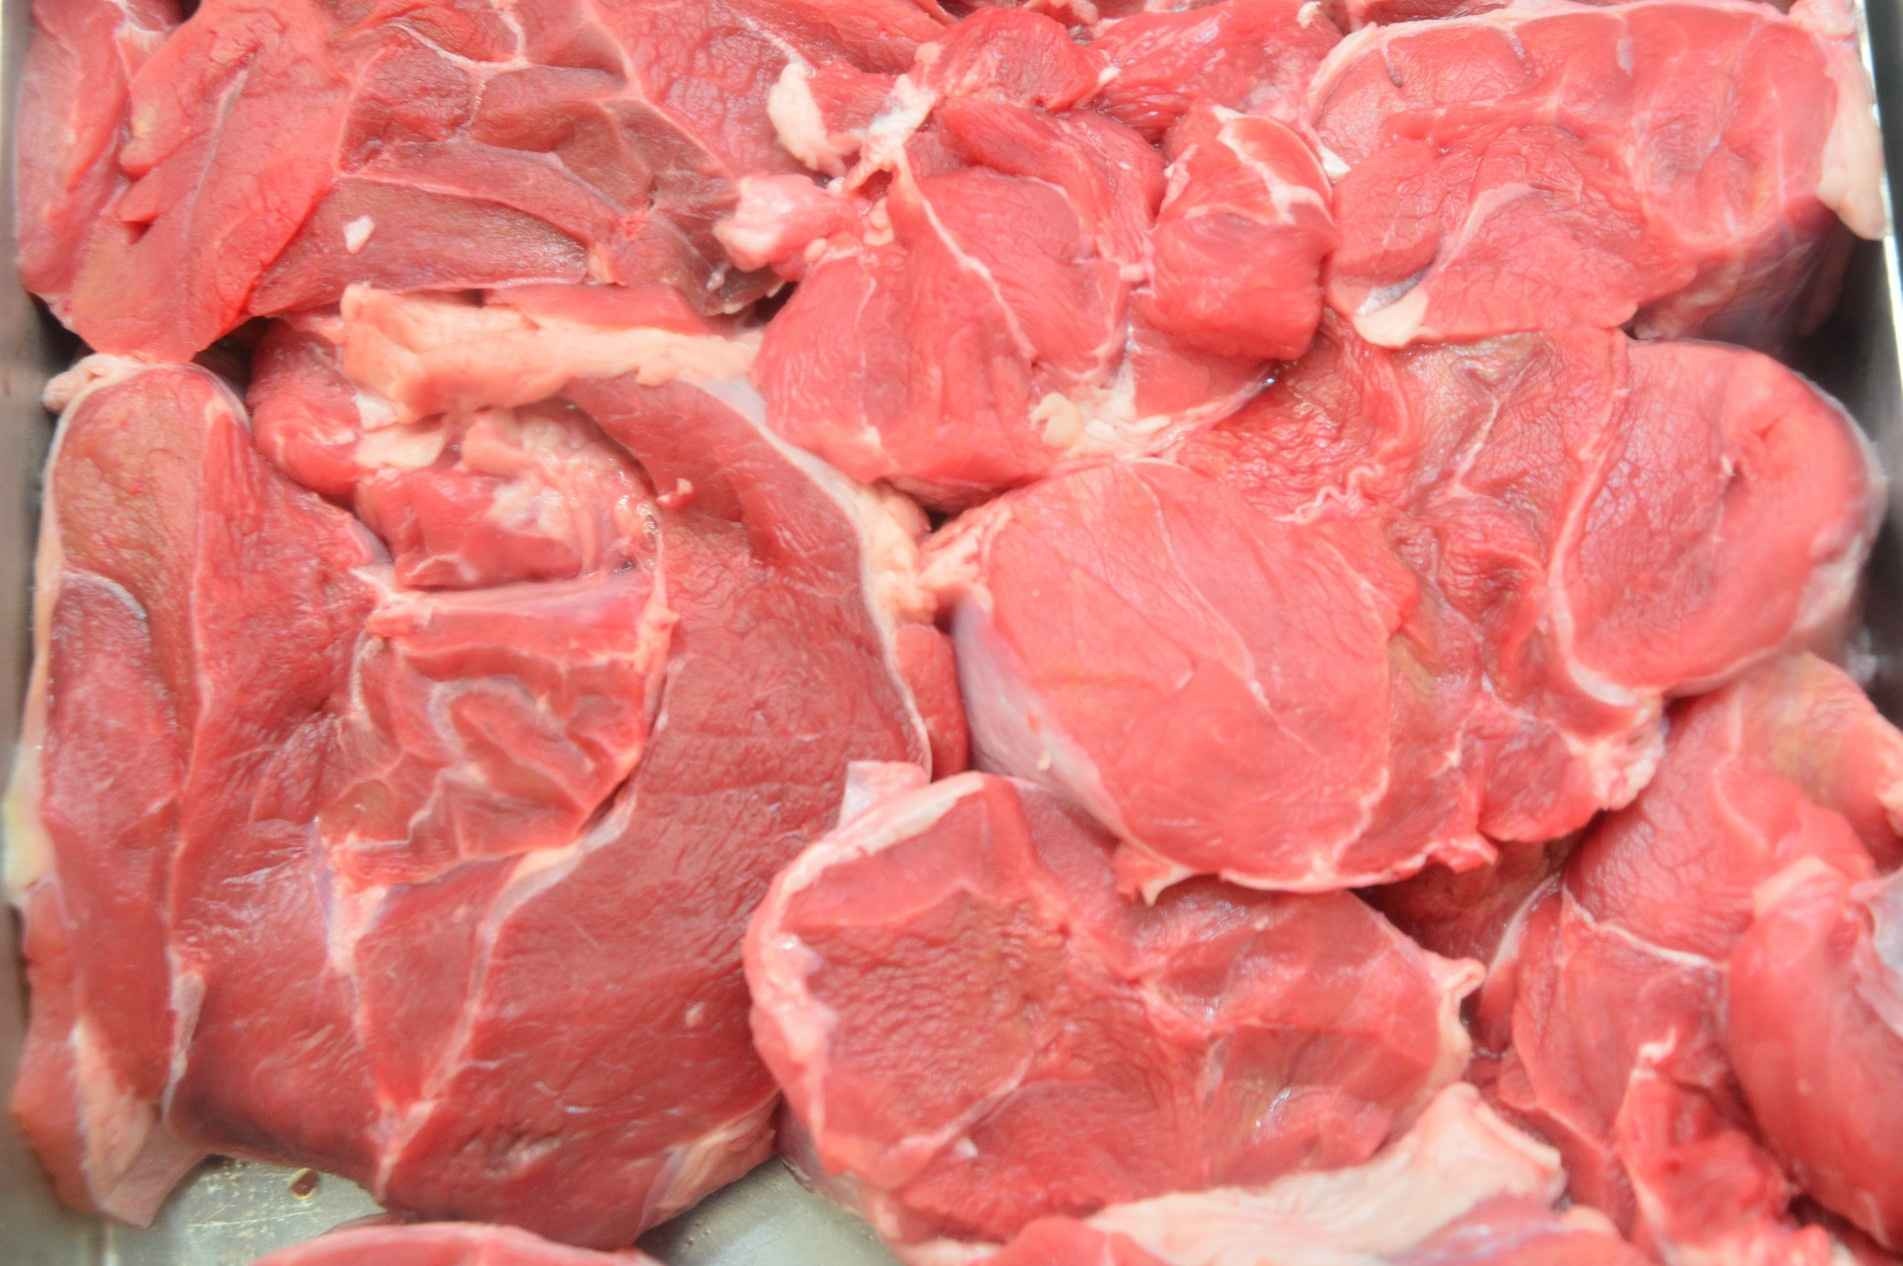 O Brasil importa carne premium. Para abastecer o mercado é preciso quebrar paradigmas e desafios, como o manejo.